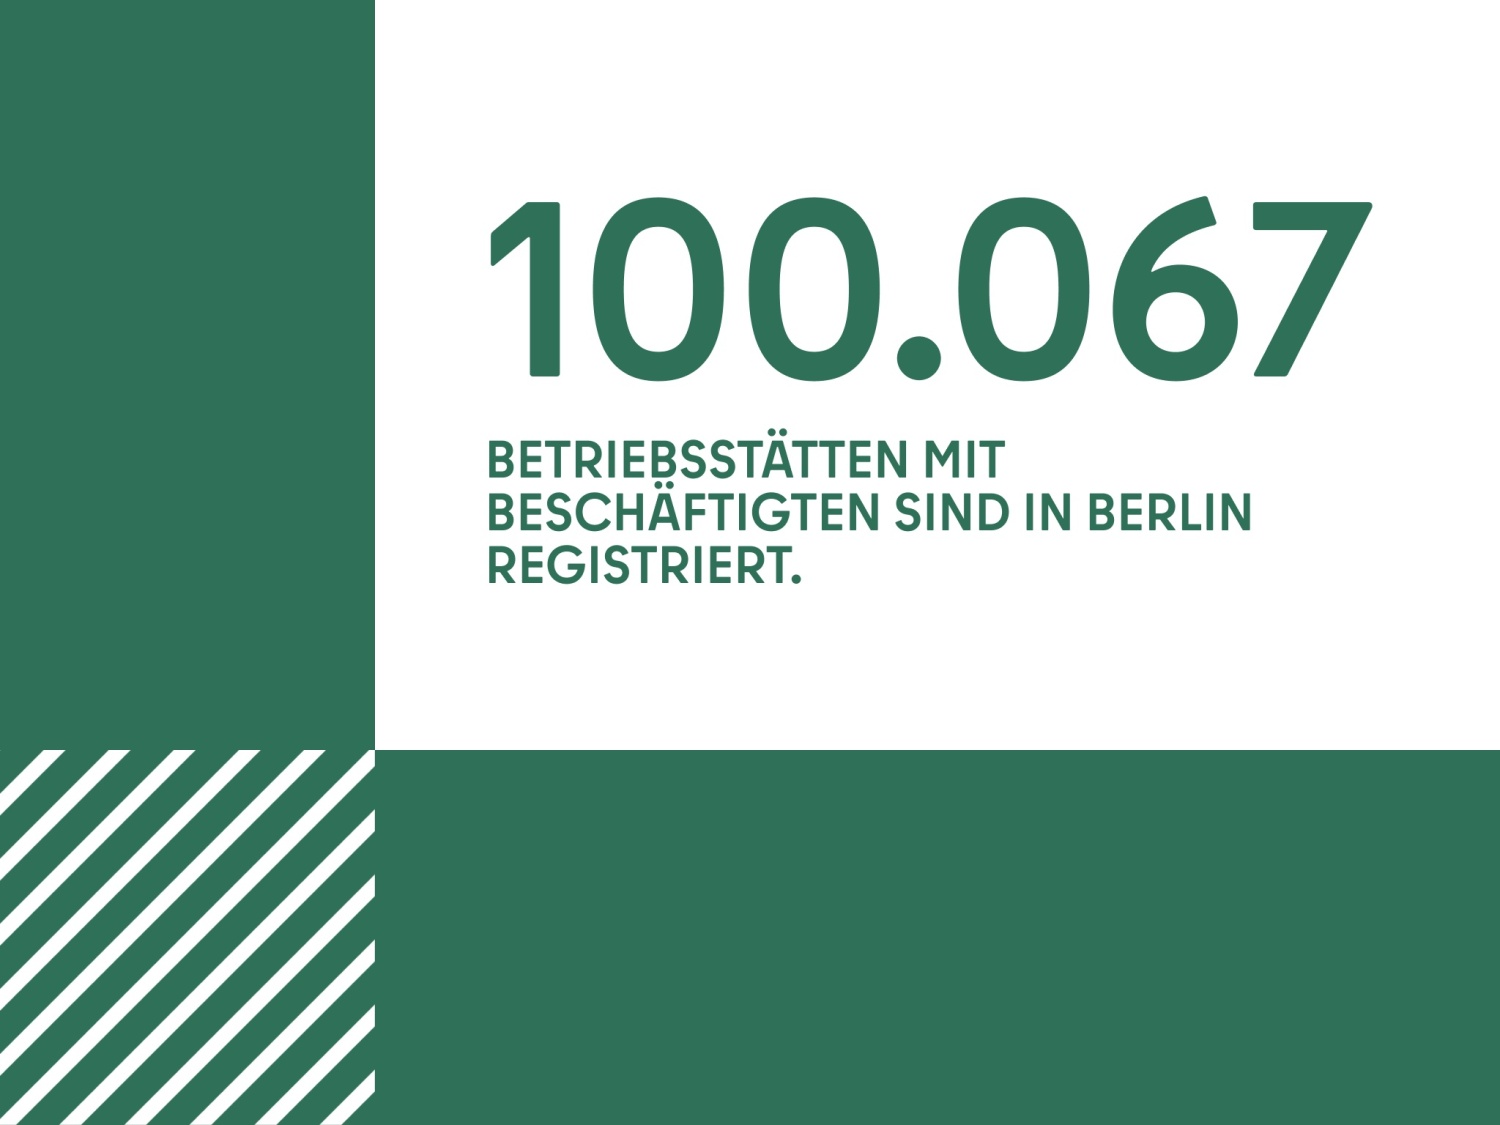 100.067 BETRIEBSSTÄTTEN MIT BESCHÄFTIGTEN SIND IN BERLIN REGISTRIERT.